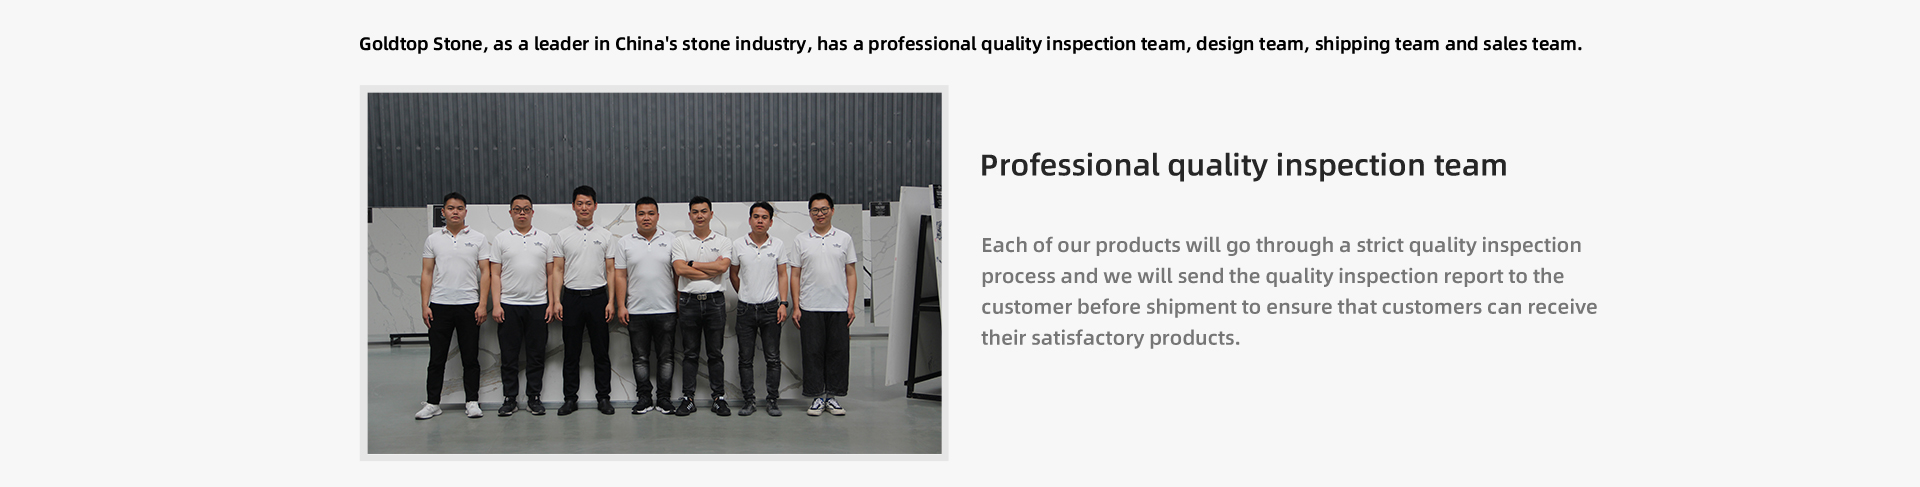 Chacun de nos produits passera par un processus d’inspection de qualité strict et nous enverrons le rapport d’inspection de la qualité au client avant l’expédition pour nous assurer que les clients peuvent recevoir leurs produits satisfaisants.